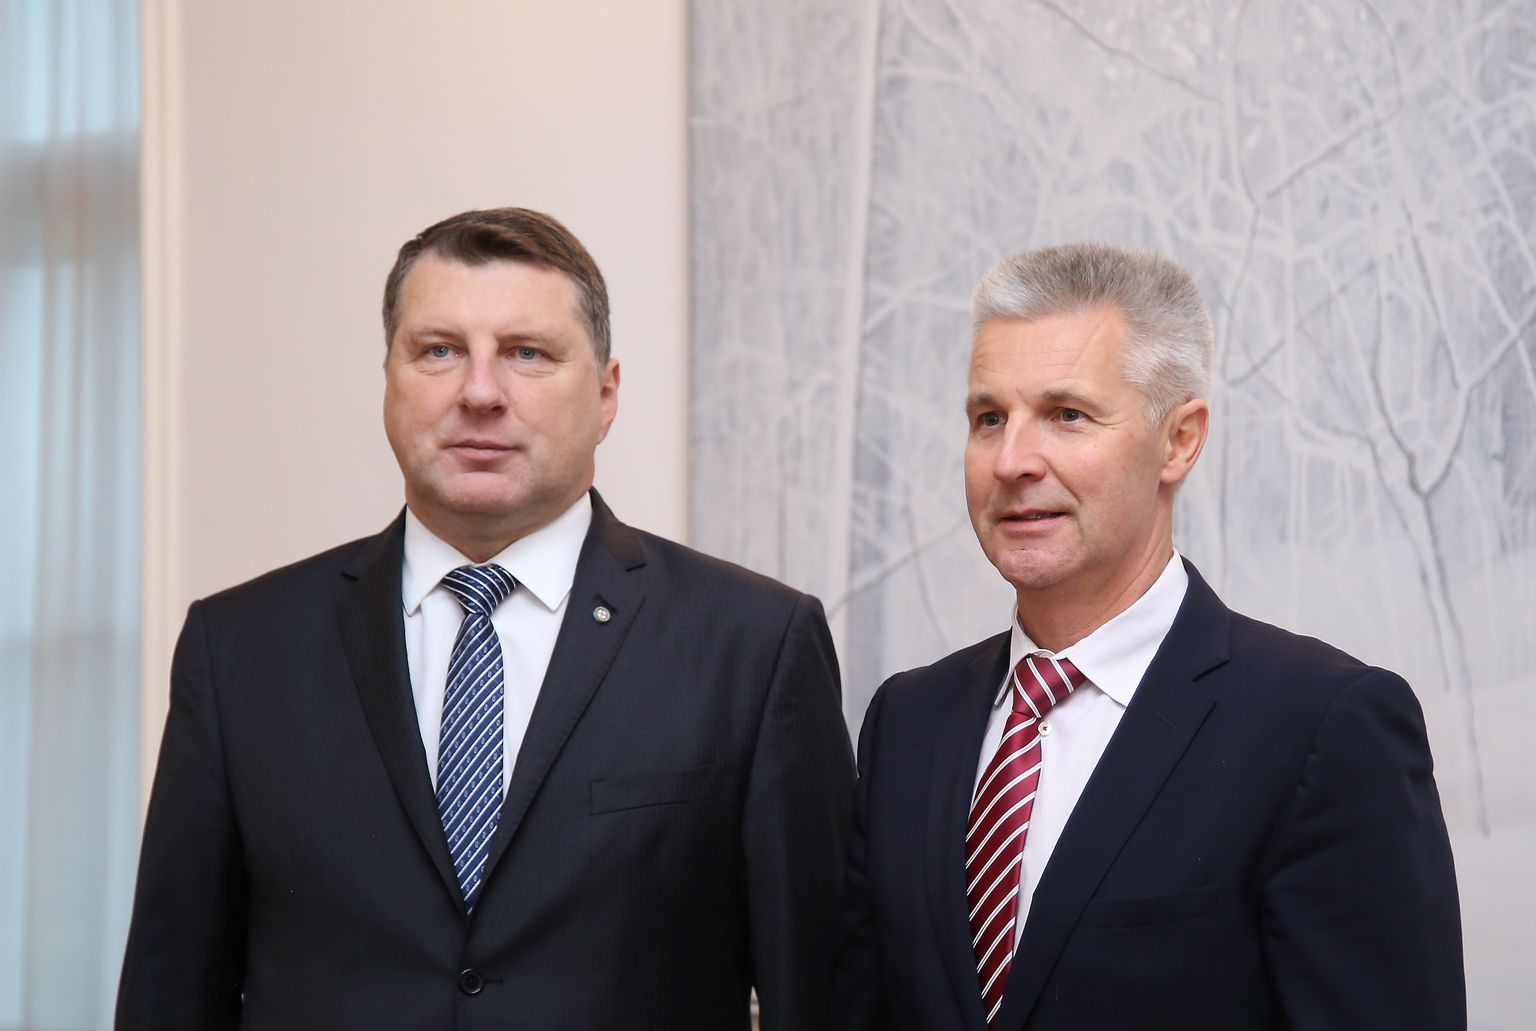 Valsts prezidents Raimonds Vējonis (no kreisās) un 13. Saeimā ievēlētās partiju apvienības "Attīstībai / Par!" deputāts Artis Pabriks.